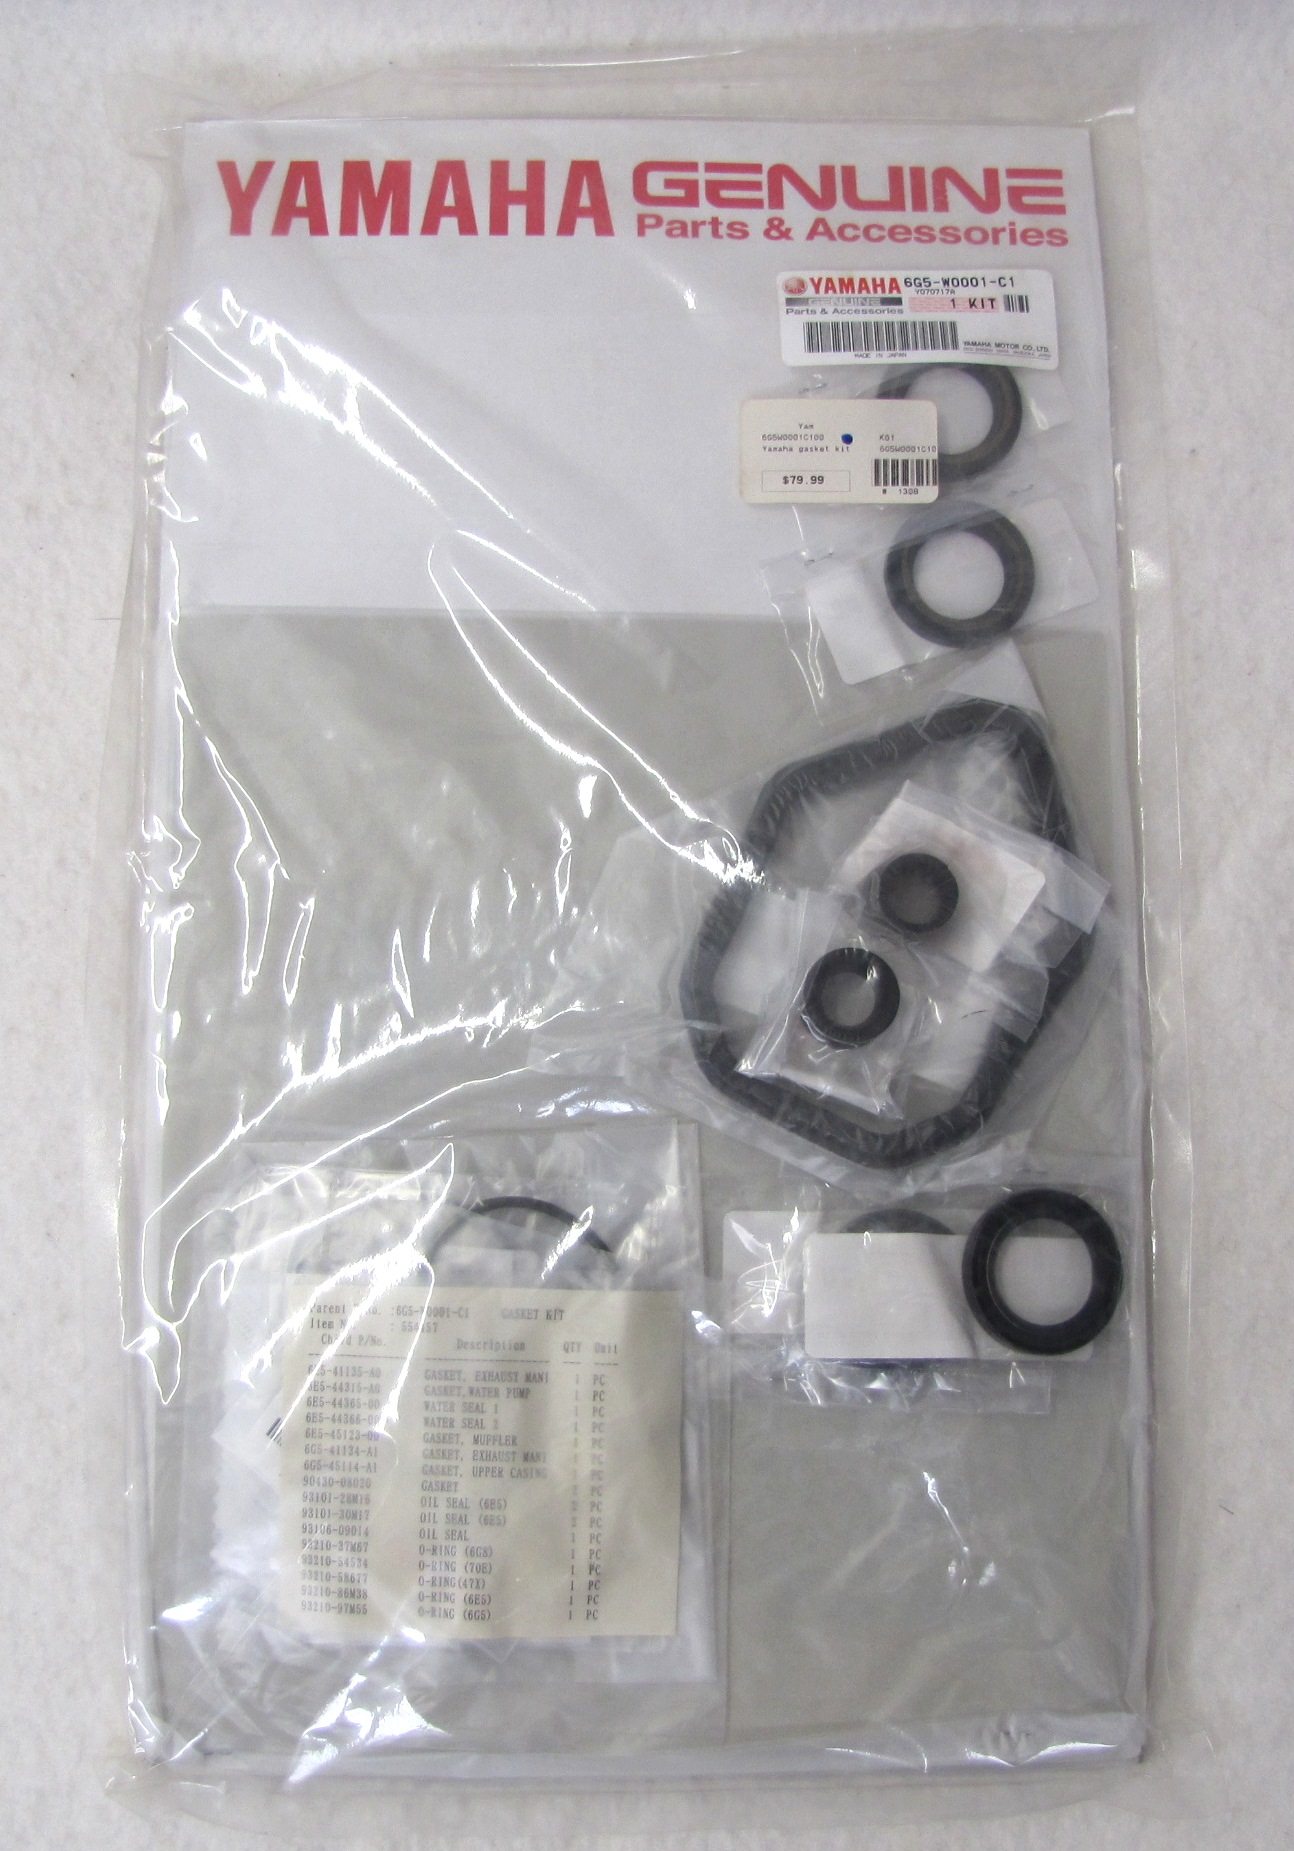 Yamaha Gearcase Seal Kit 6G5-W0001-C1-00 150 175 200 225 HP 2 & 4 Stroke